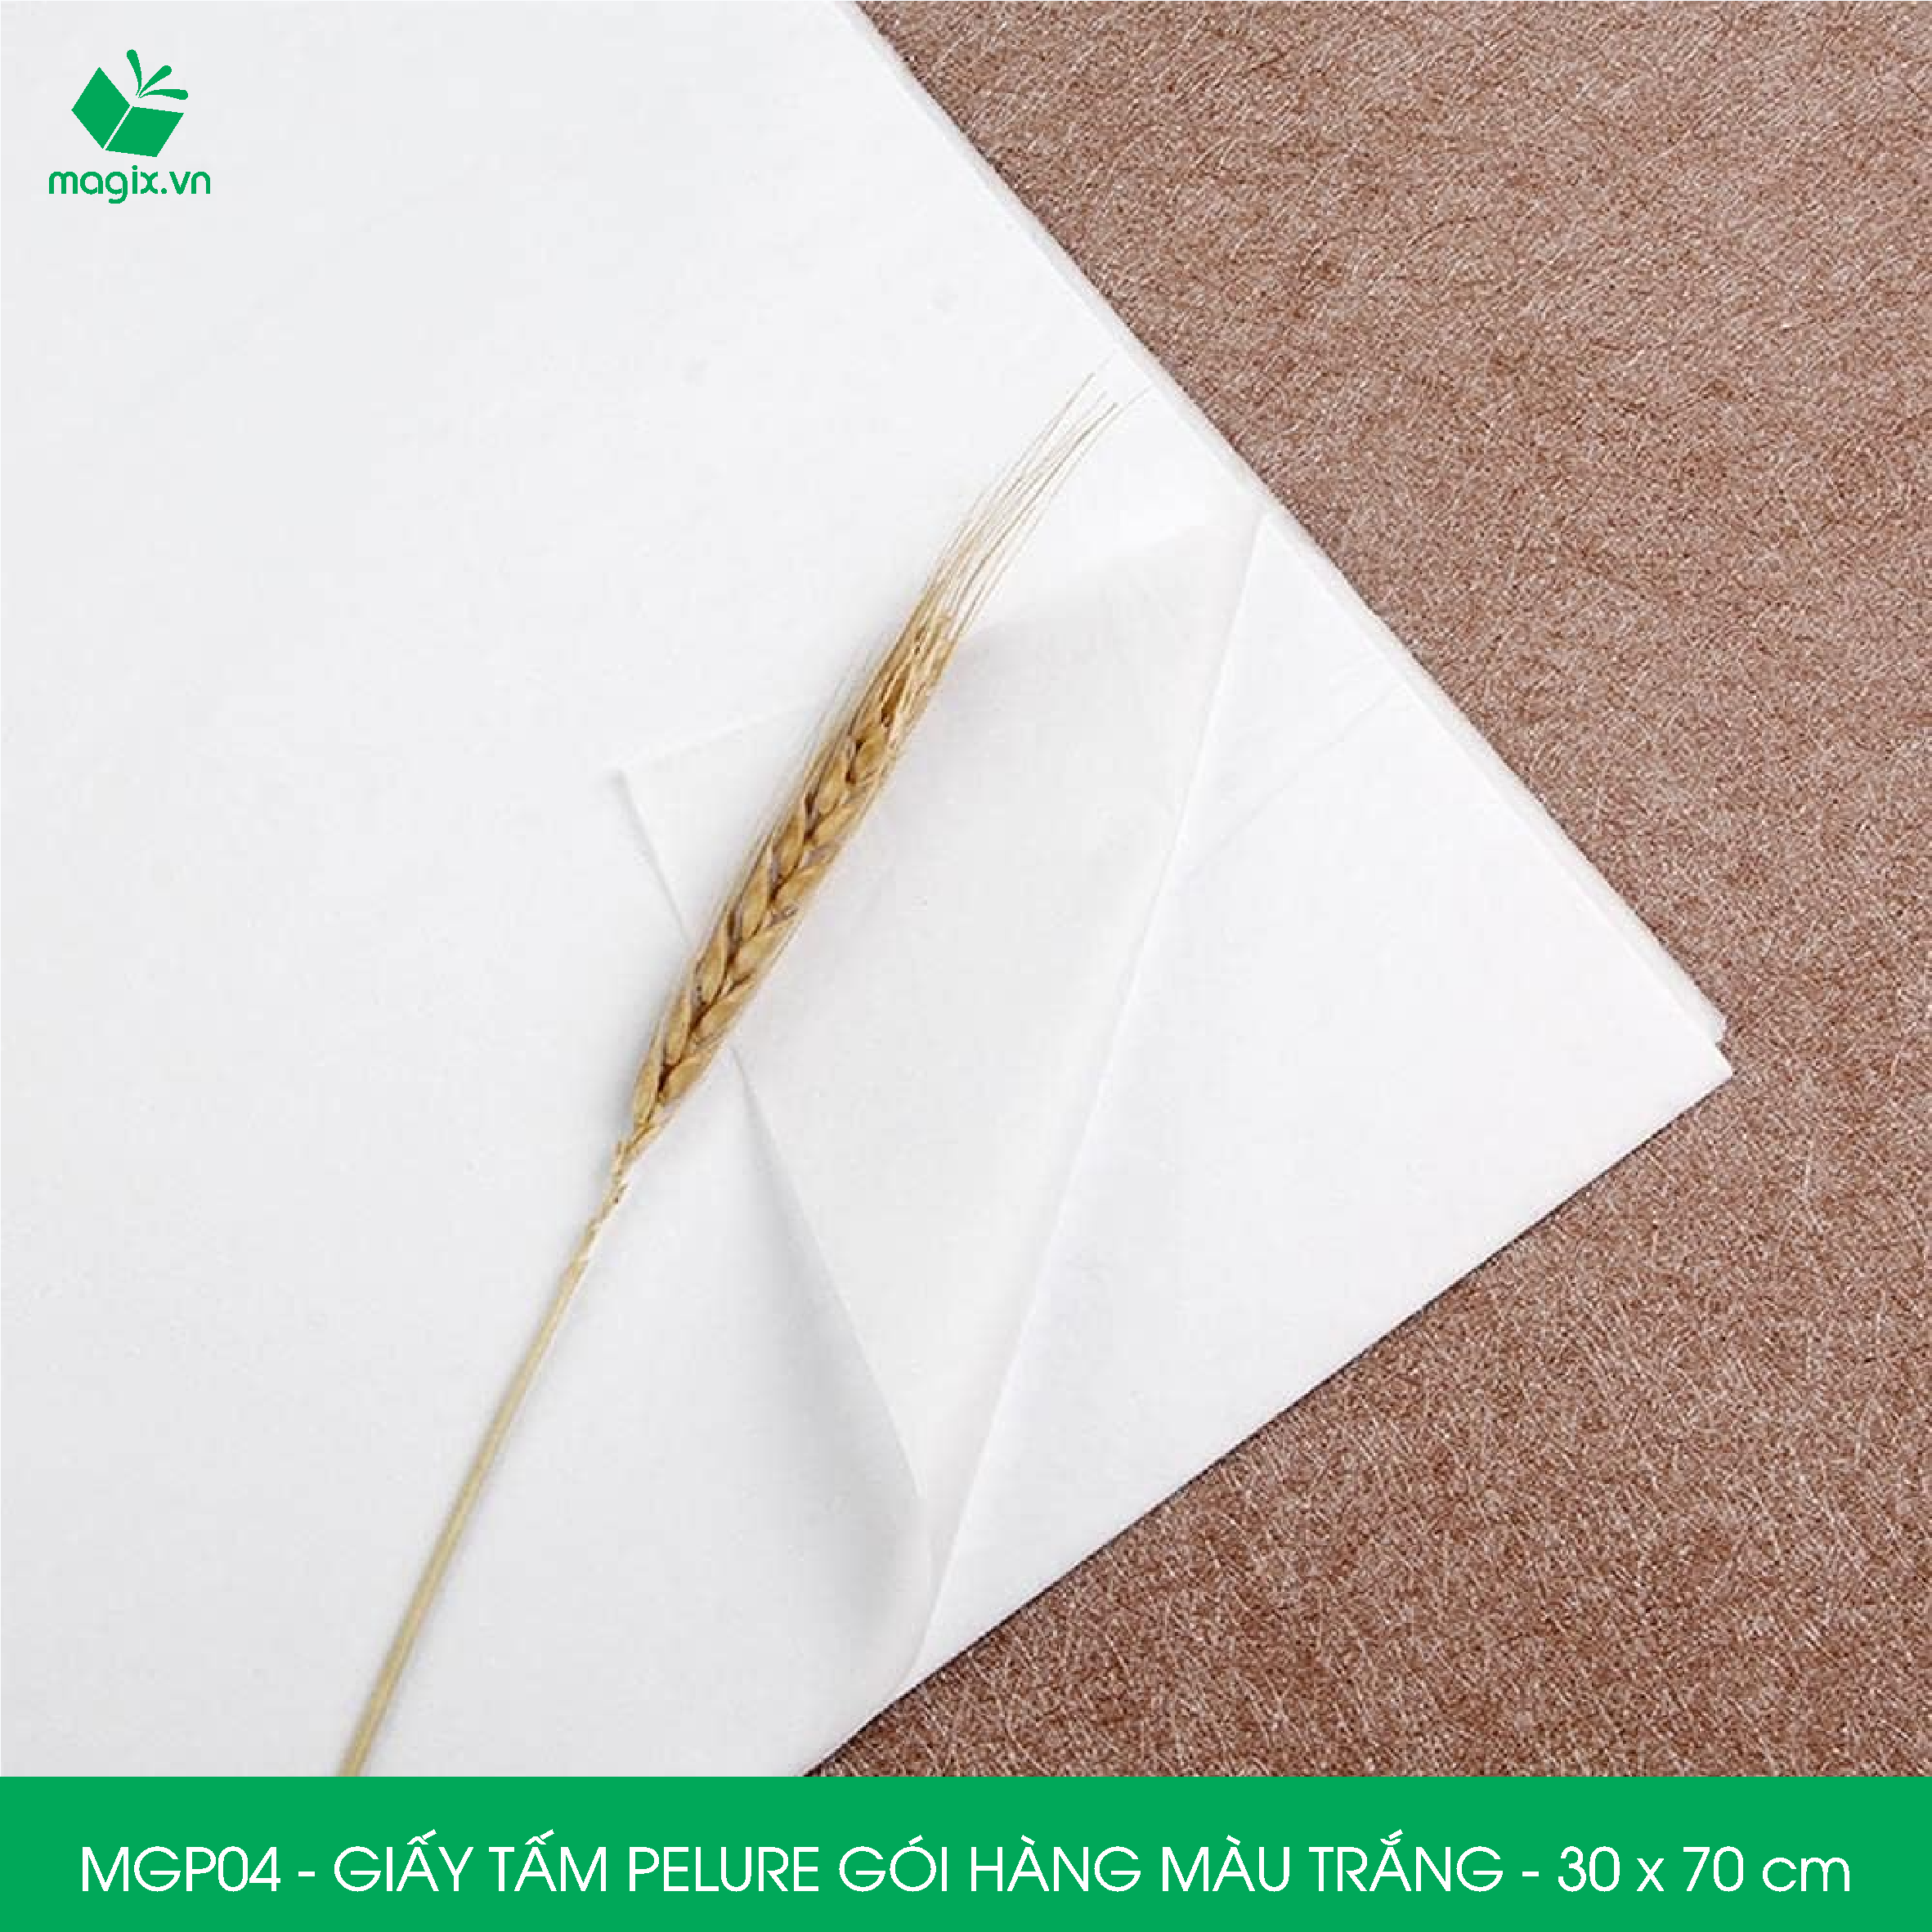 MGP04 - 30x70 cm - 100 tấm giấy Pelure trắng gói hàng, giấy chống ẩm 2 mặt mịn, giấy bọc hàng thời trang